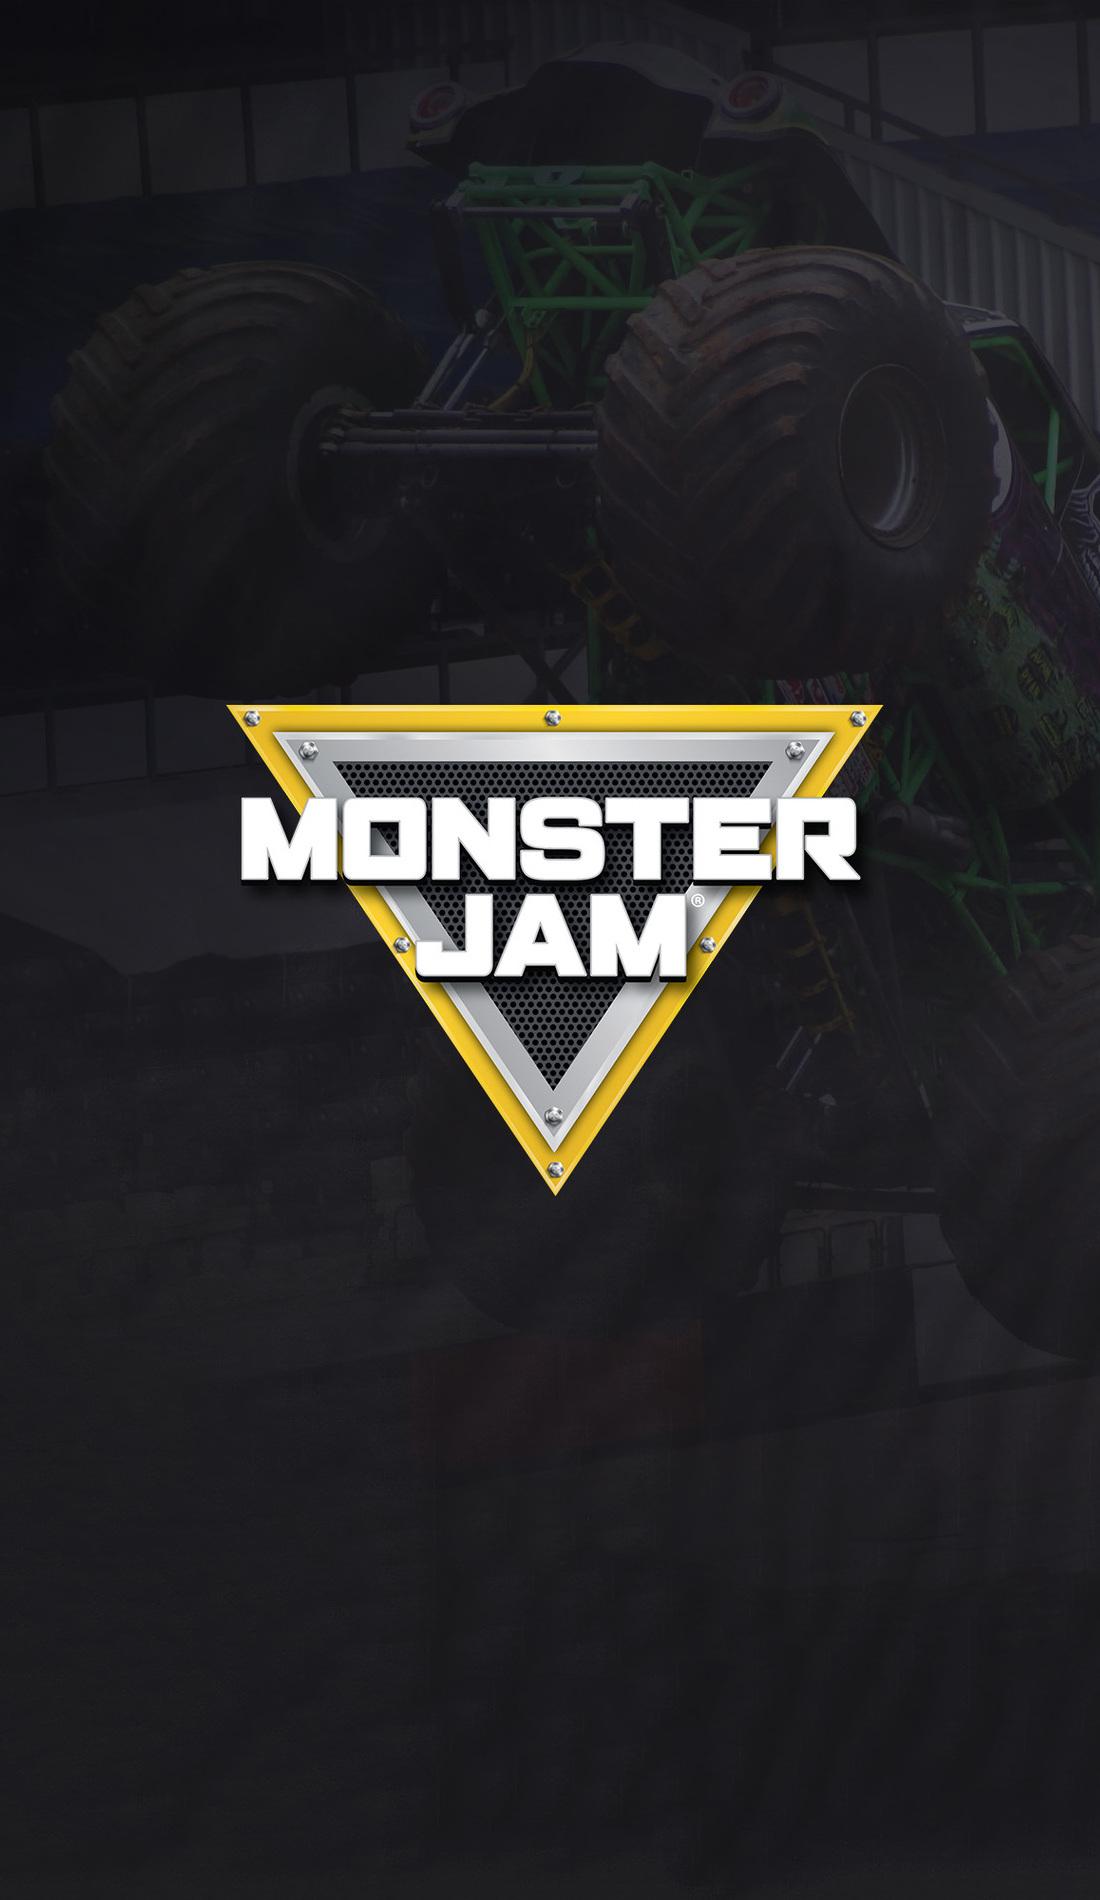 Monster Jam  Snapdragon Stadium